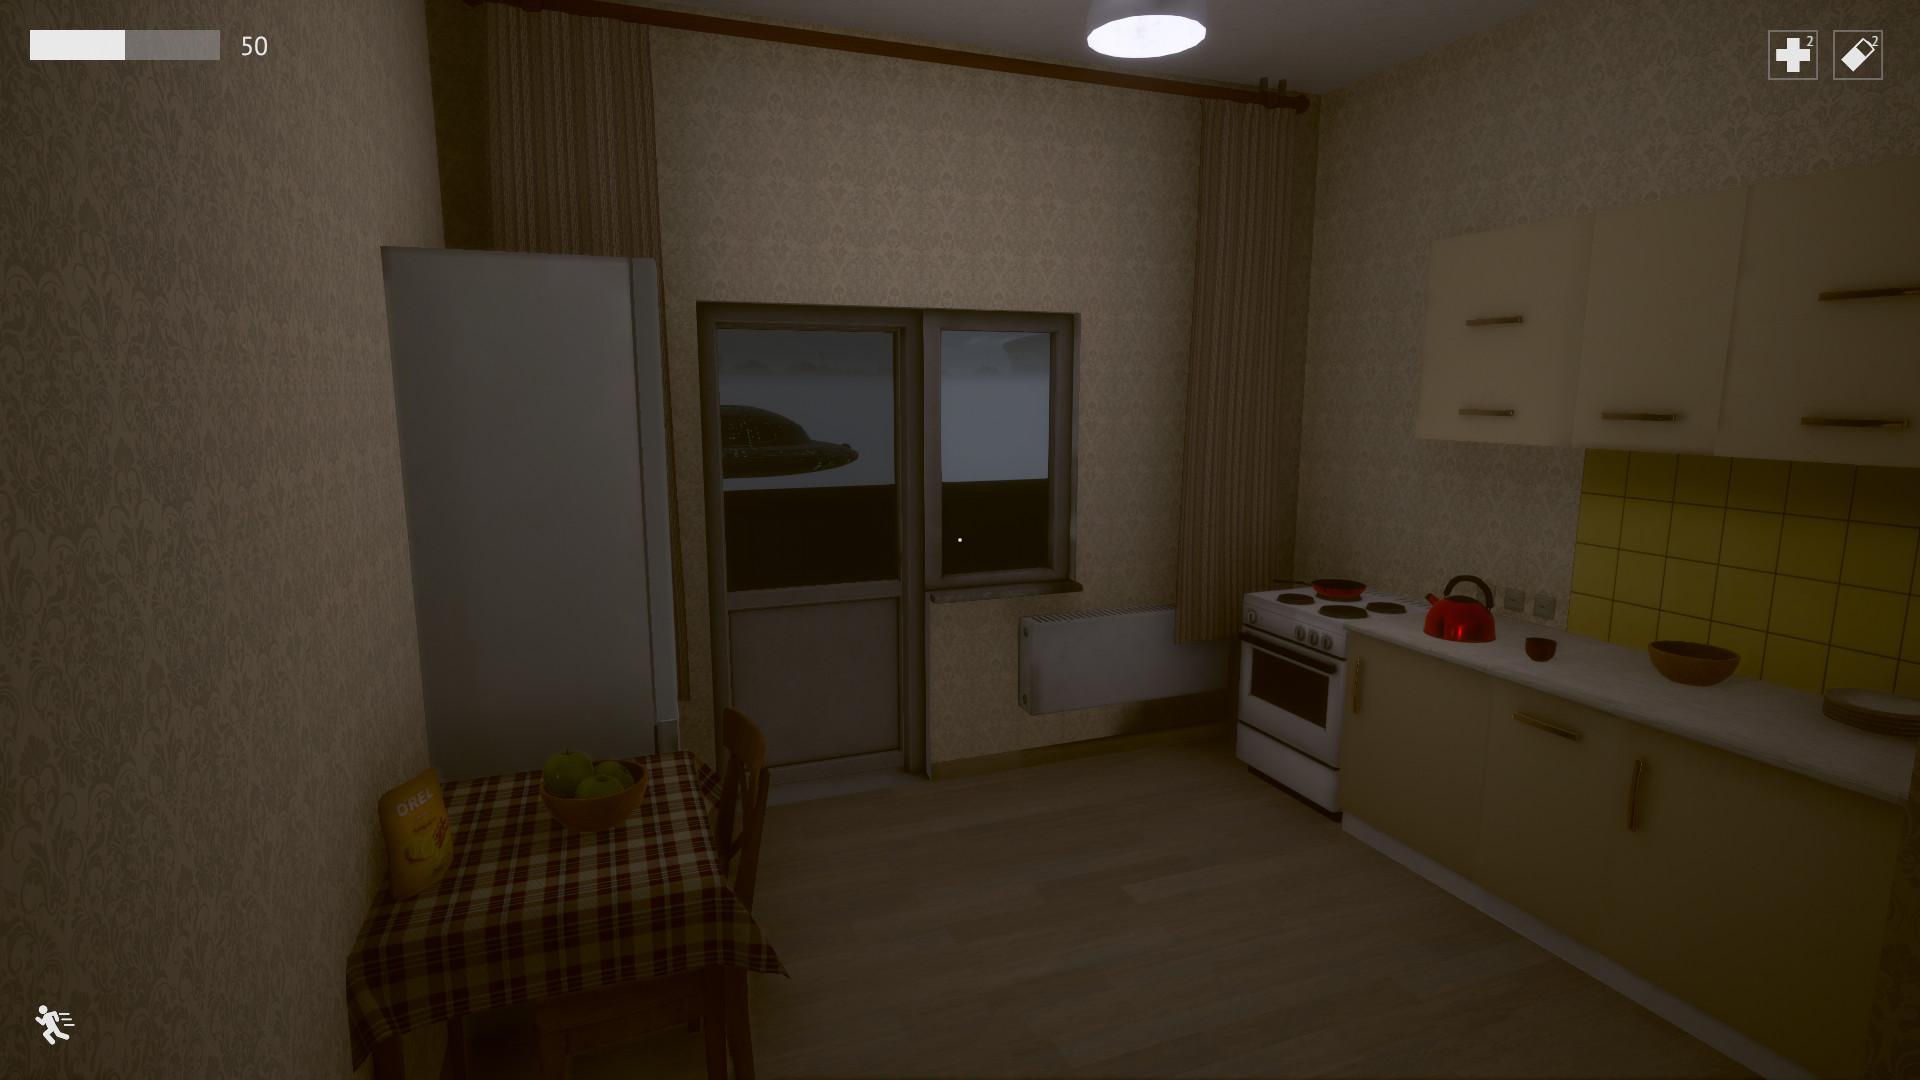 Screenshot №2 from game Last Floor